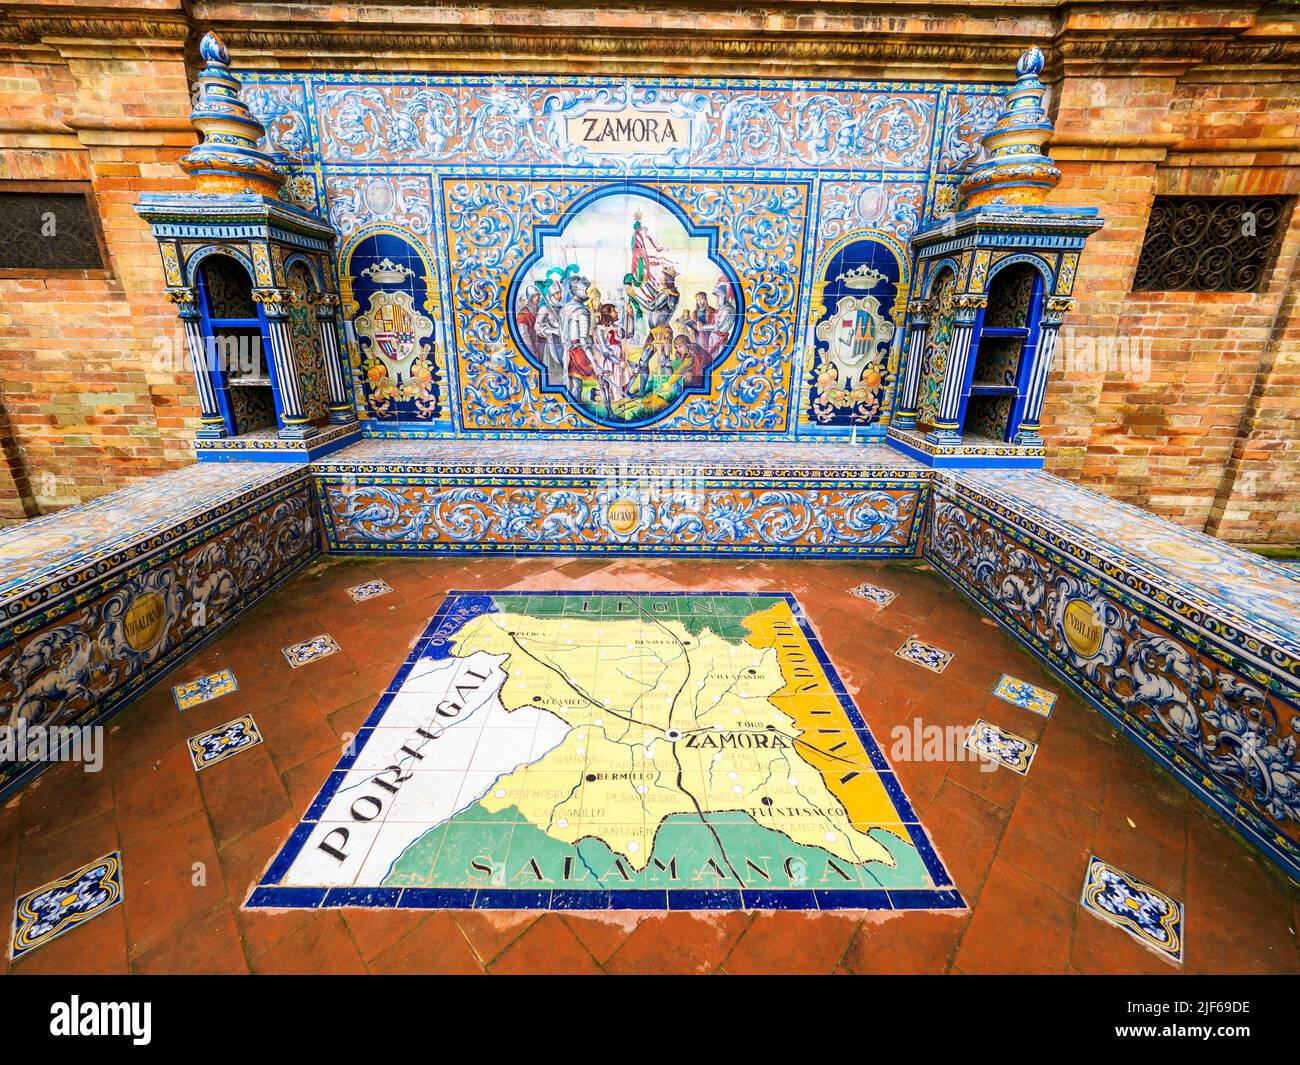 Detalle de la provincia española de zamora en azulejos a lo largo de las paredes del edificio Plaza de España - Sevilla, España Foto de stock